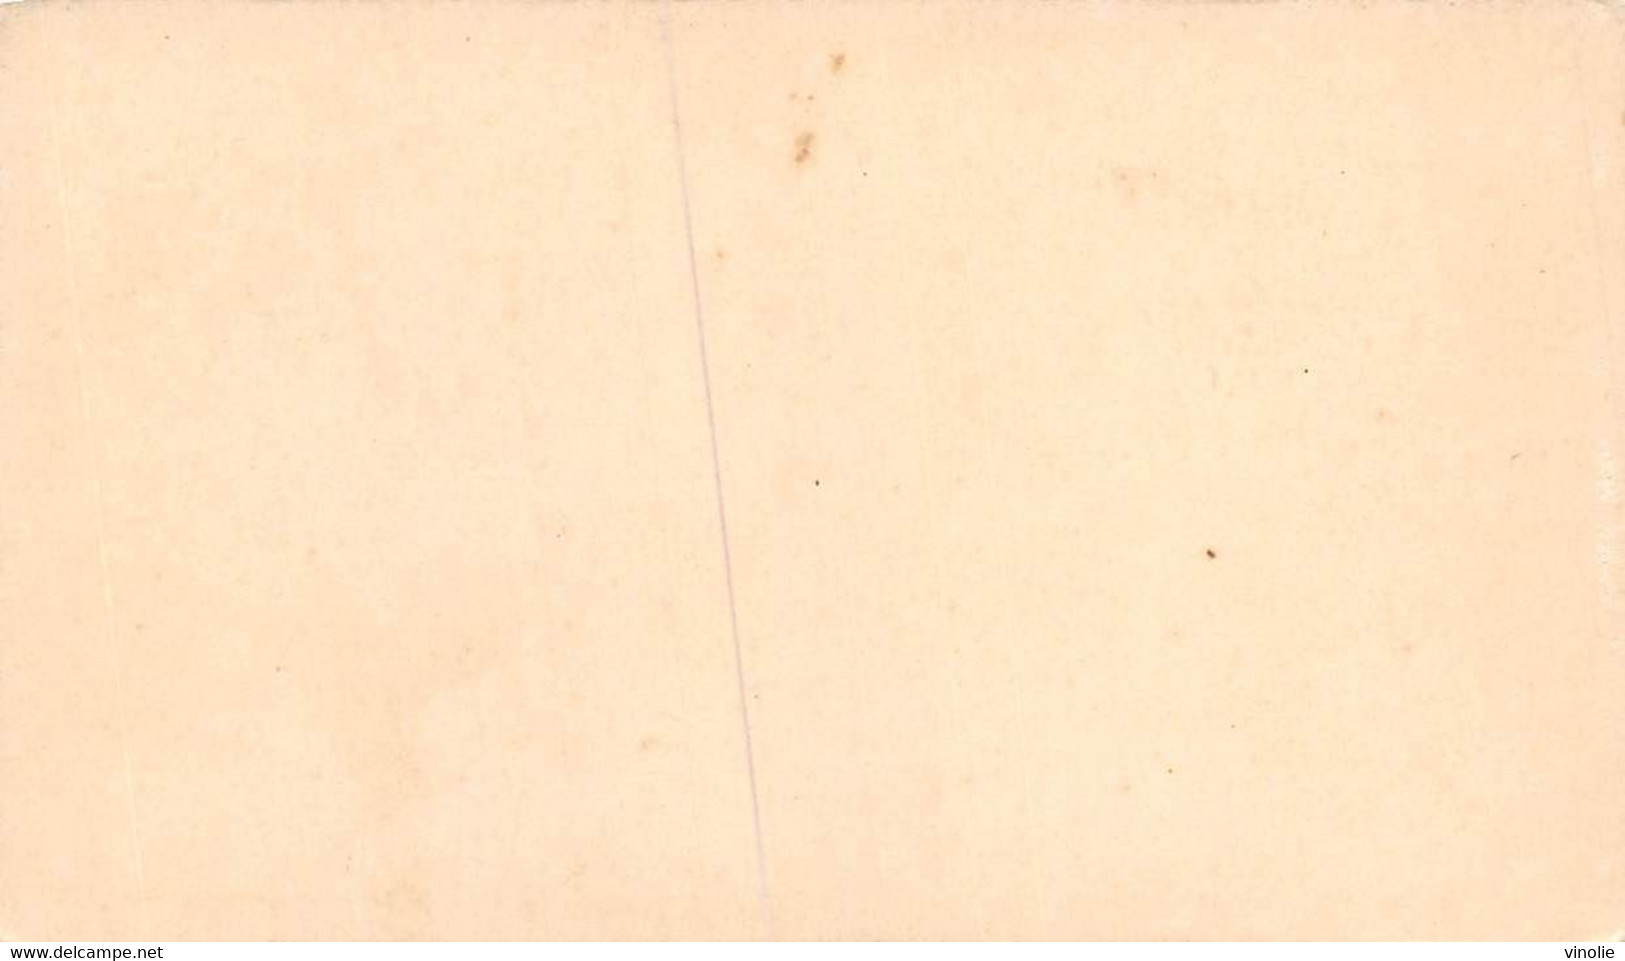 P.21-FO-1570 : IMAGE. CHROMOLITHOGRAPHIE. THEME MONNAIE. PIECE DE 20 CENTIMES. 1870 - Non Classés